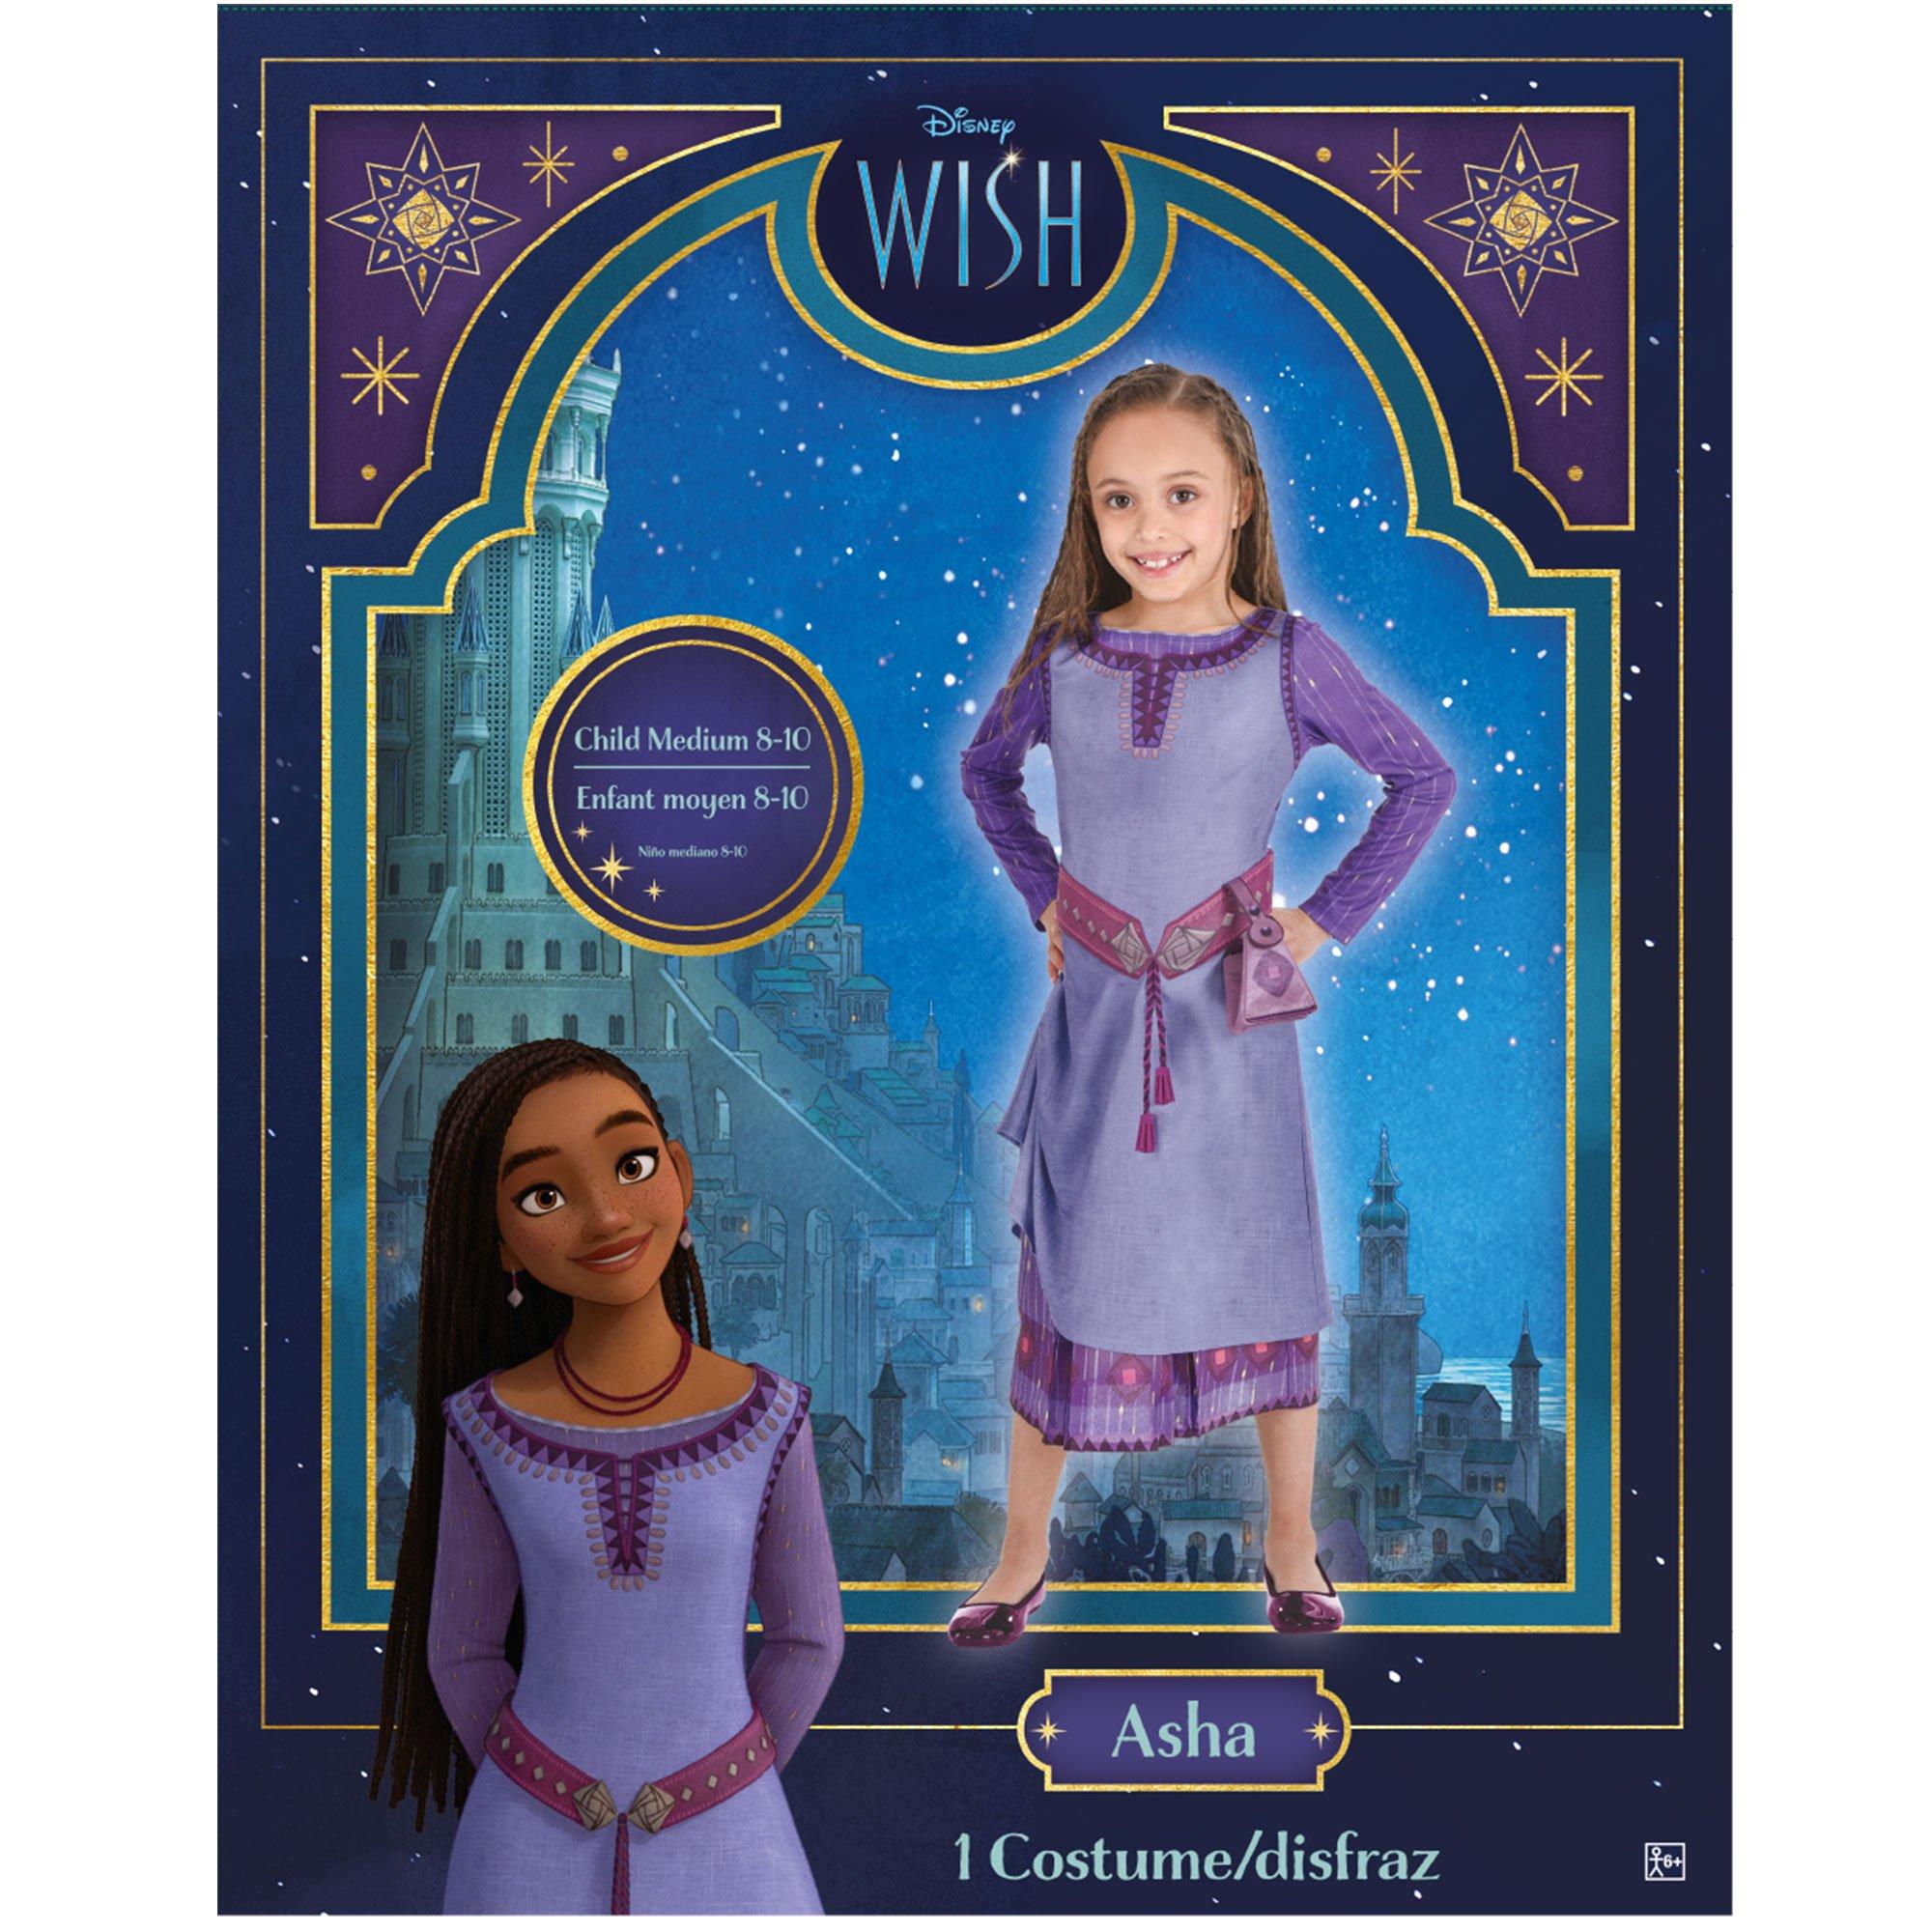 Disney Wish Asha Basic Plus Costume